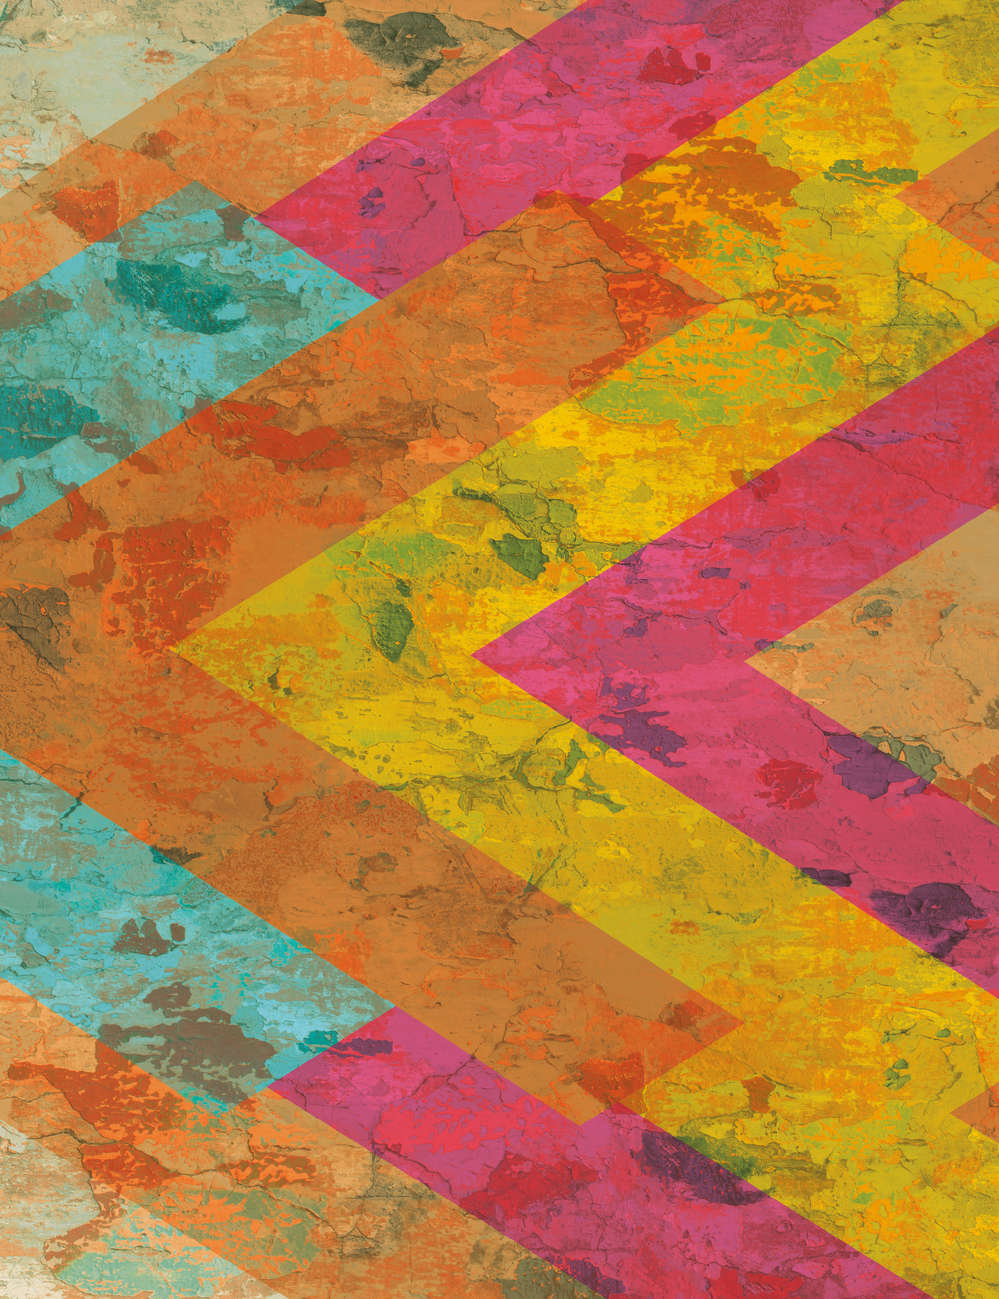             Papier peint panoramique aspect béton rustique avec bandes Colour Block
        